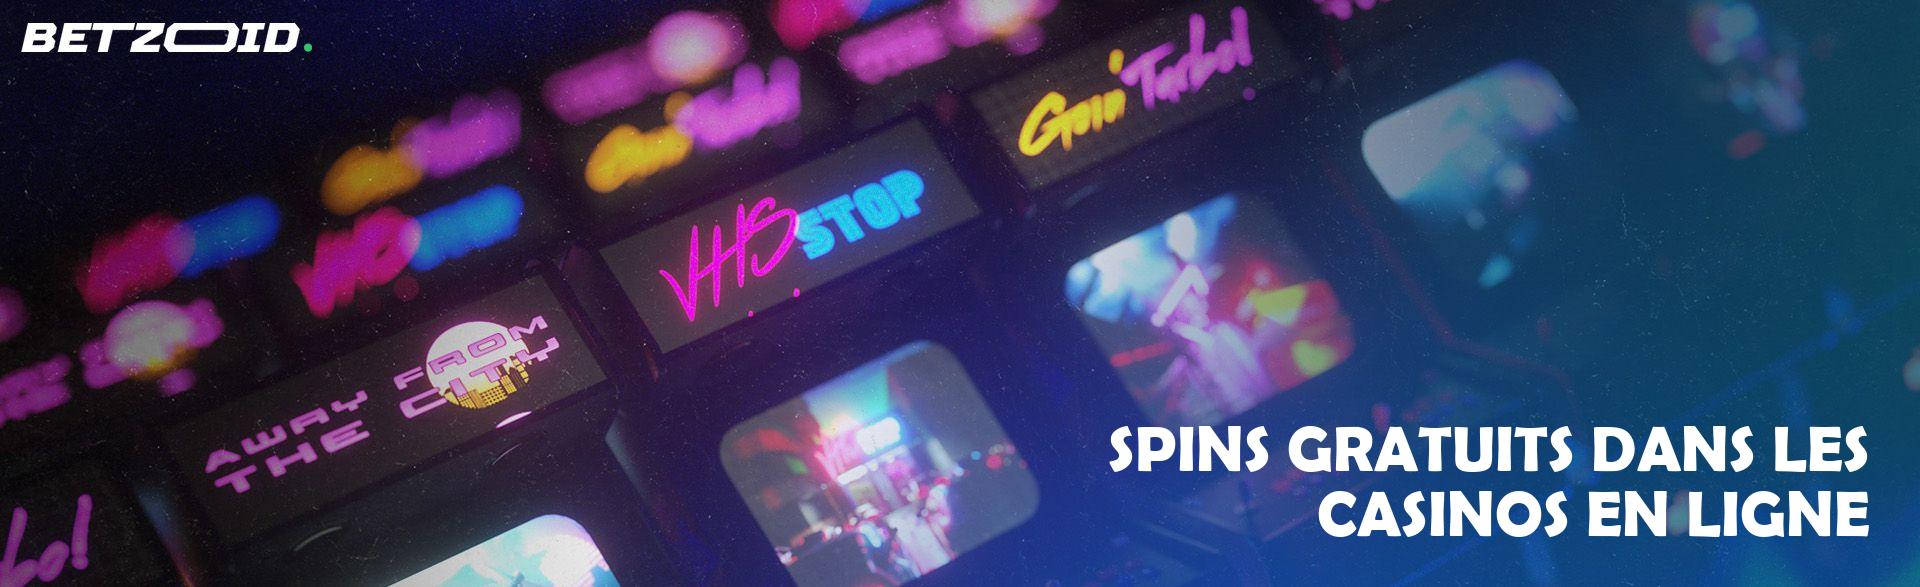 Spins Gratuits dans les Casinos en Ligne.